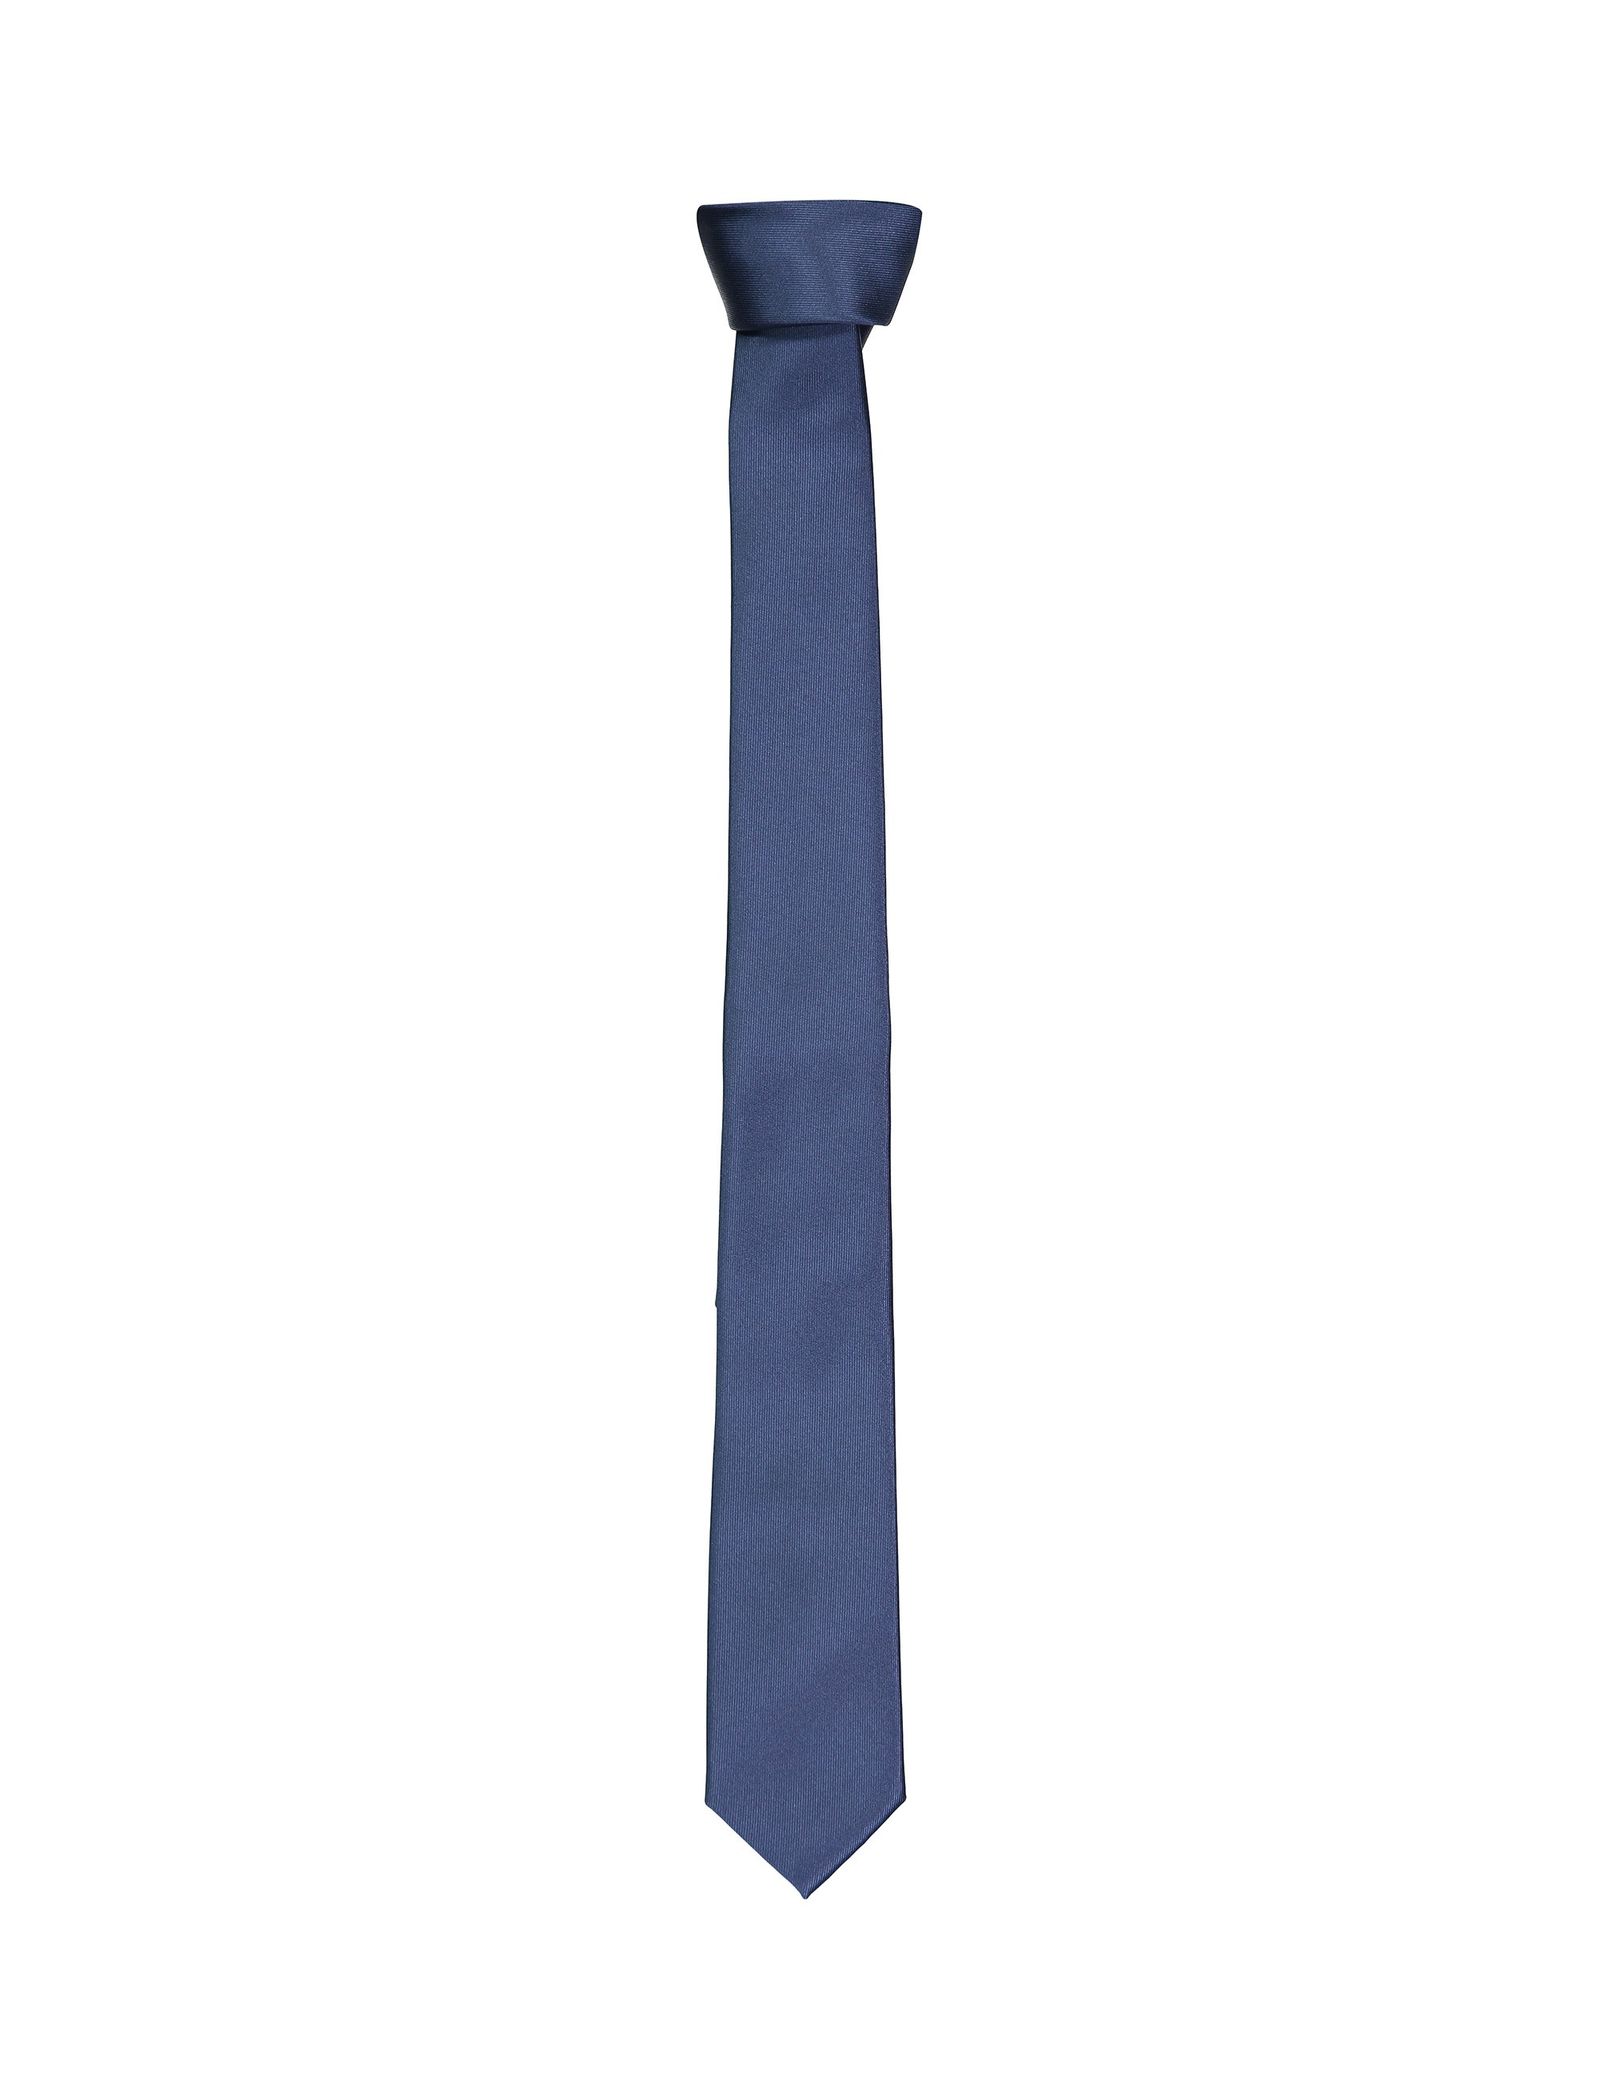 کراوات ساده مردانه - سلکتد - سرمه اي - 2